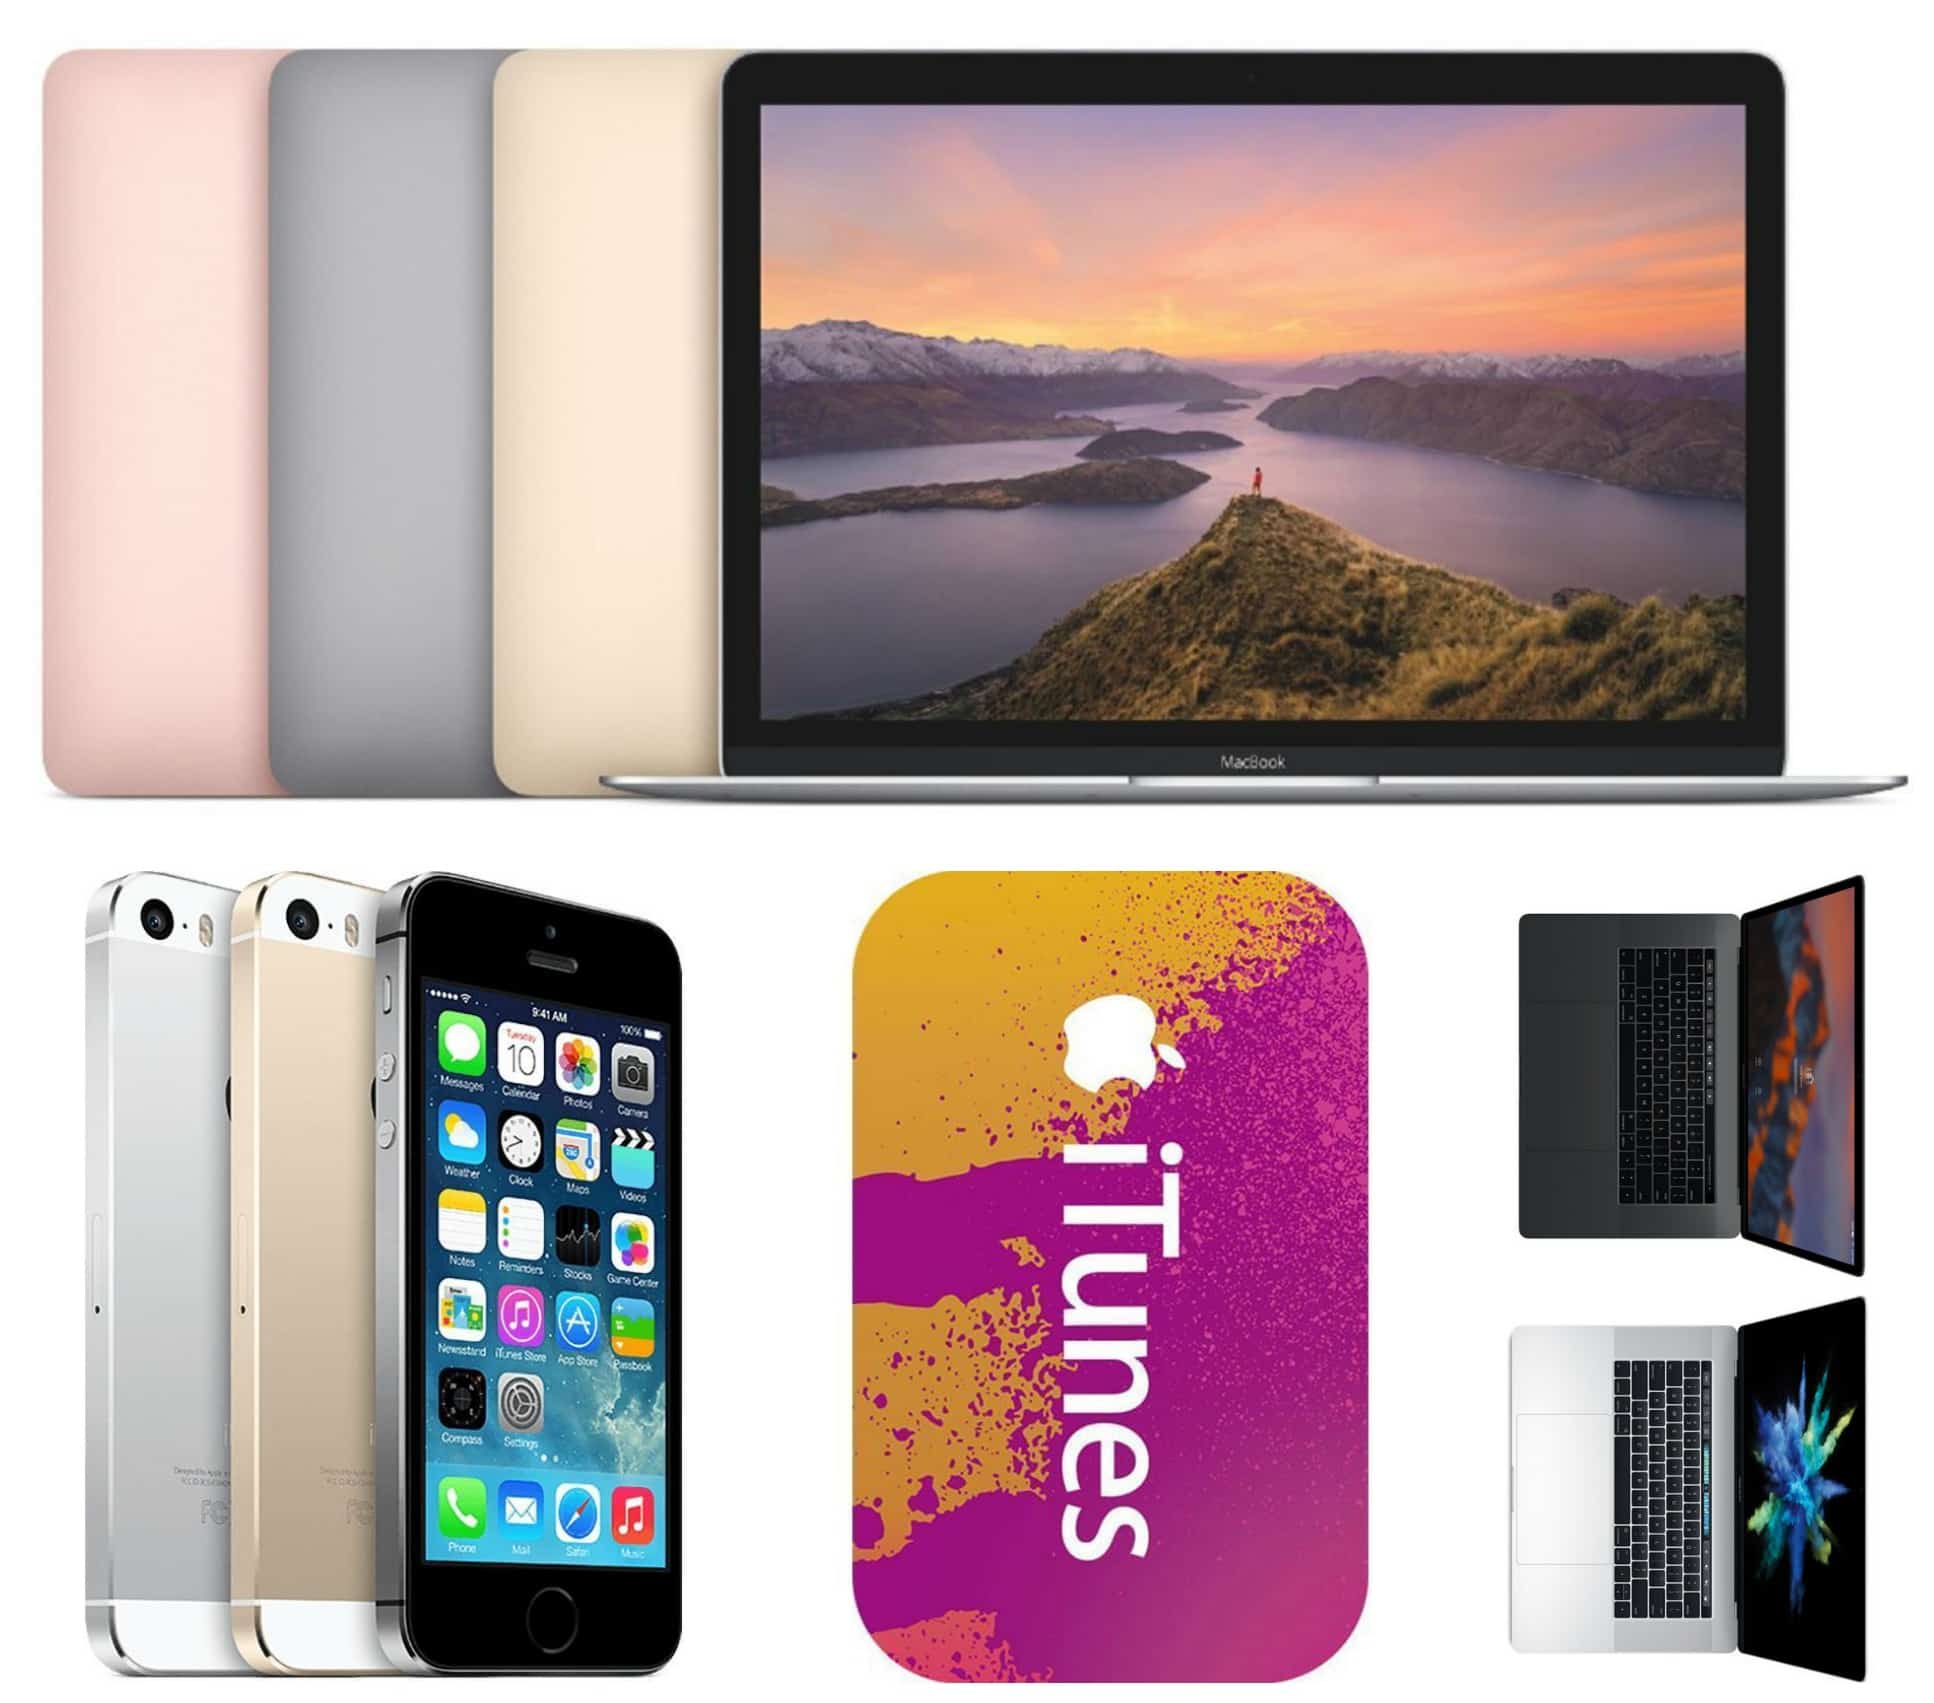 Apple deals on MacBook, iPhone 5s, MacBook Pro, iTunes Gift Cardsåç